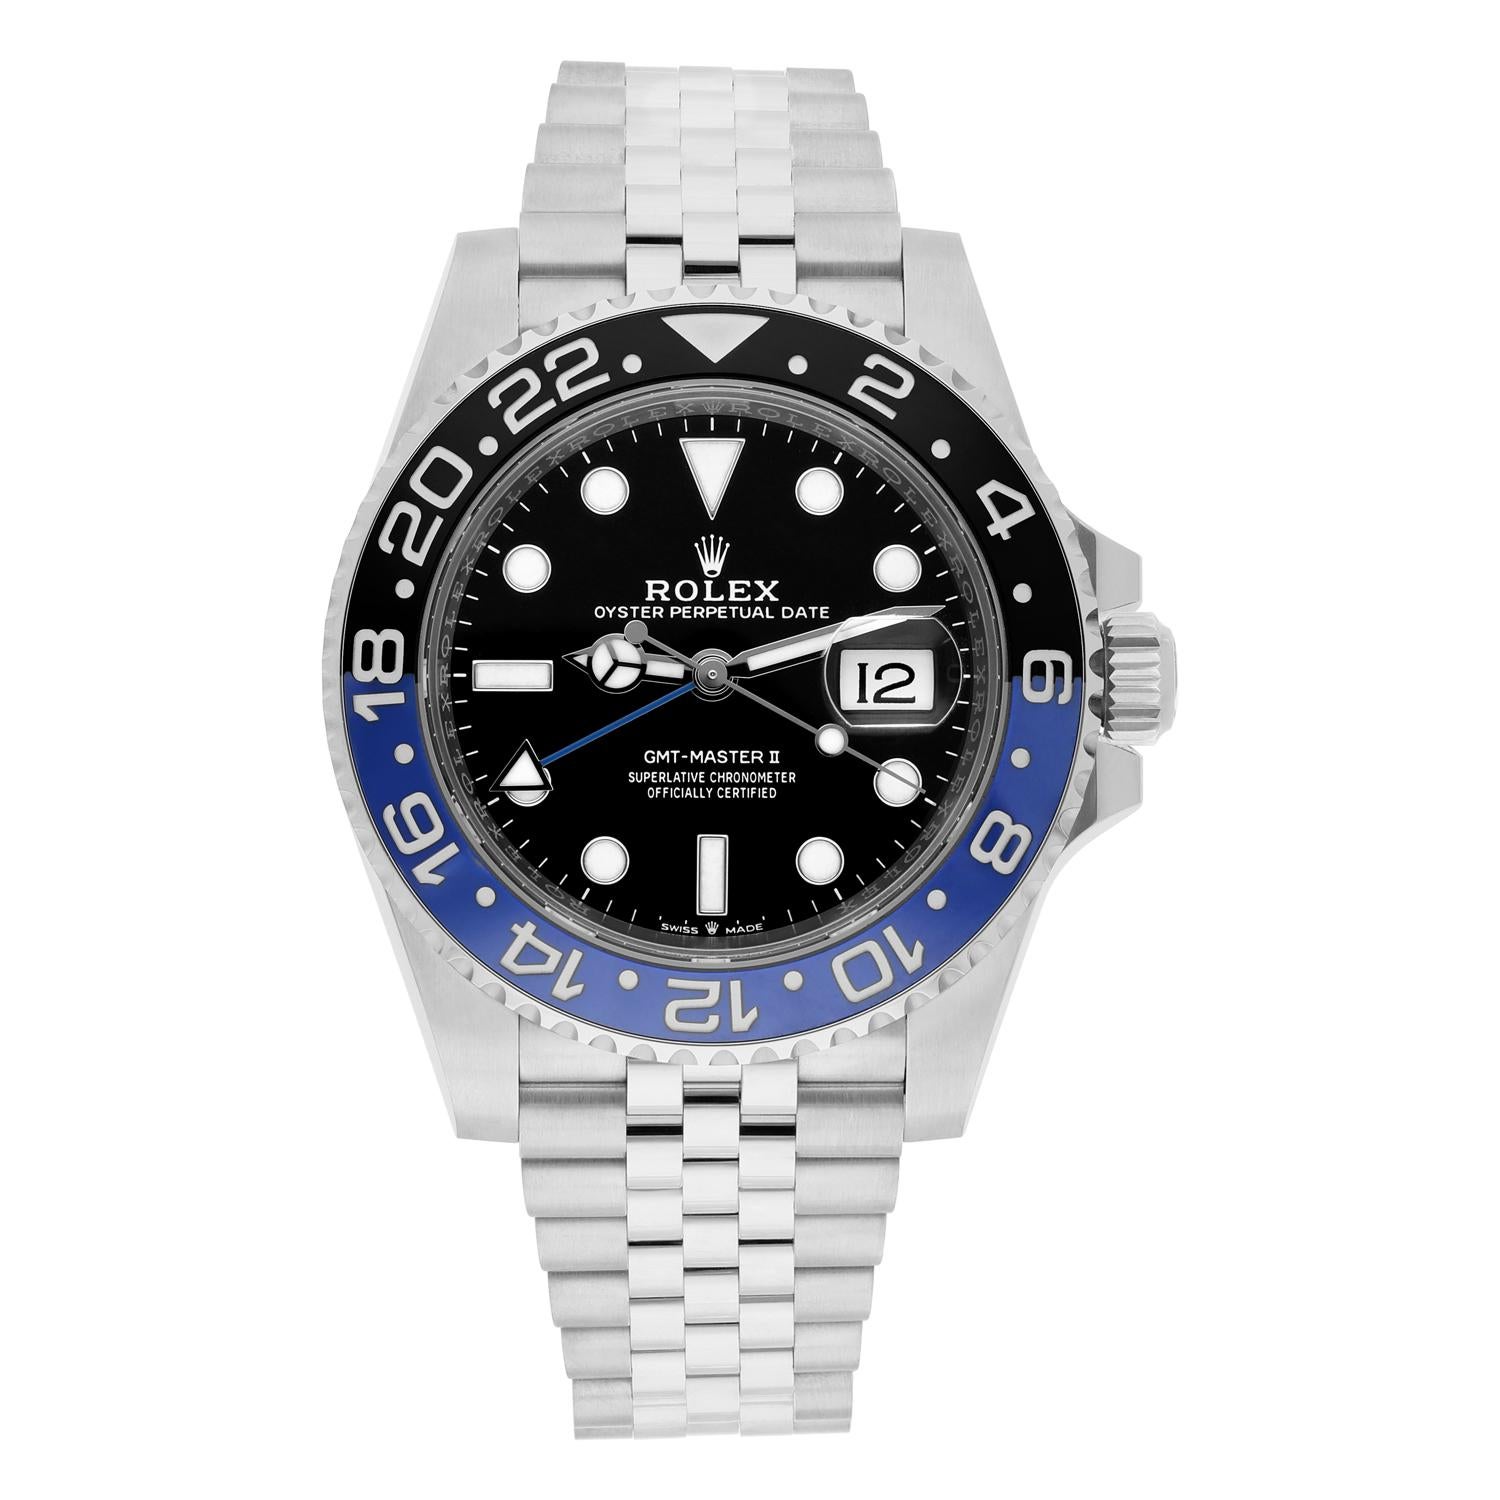 Voici la montre-bracelet Rolex GMT-Master II 126710BLNR, dotée d'un boîtier en acier inoxydable de 40 mm et d'une lunette GMT tournante bidirectionnelle bleue et noire. Le cadran noir est doté d'aiguilles et d'index lumineux, ainsi que d'un